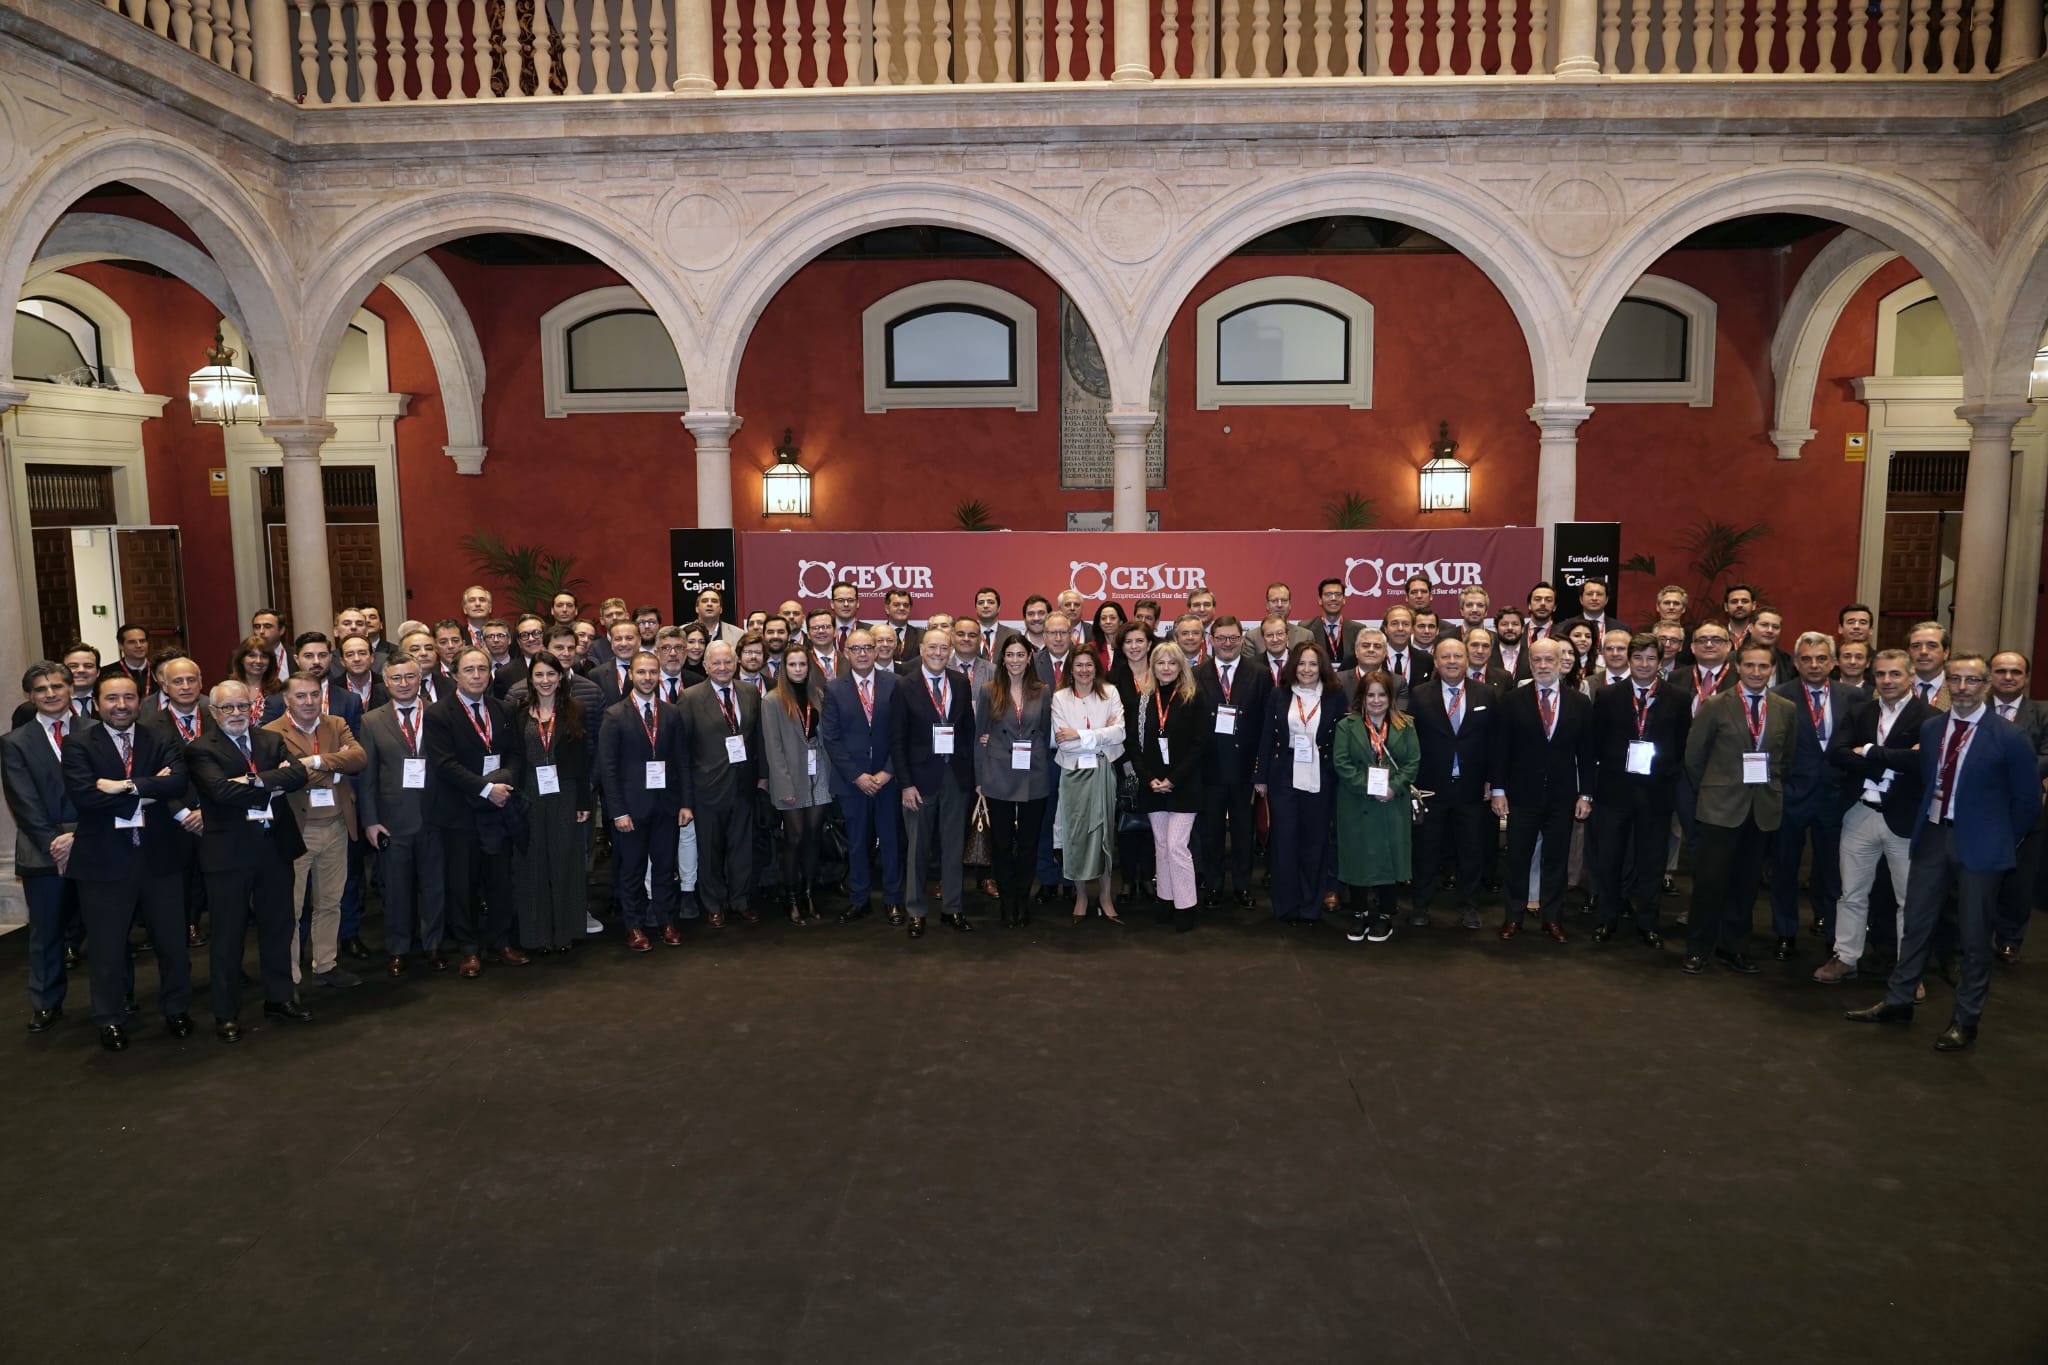  VIII Asamblea General Ordinaria de socios de Cesur, que ha congregado en Sevilla a más de 200 empresarios de Andalucía, Extremadura, Ceuta y Melilla.